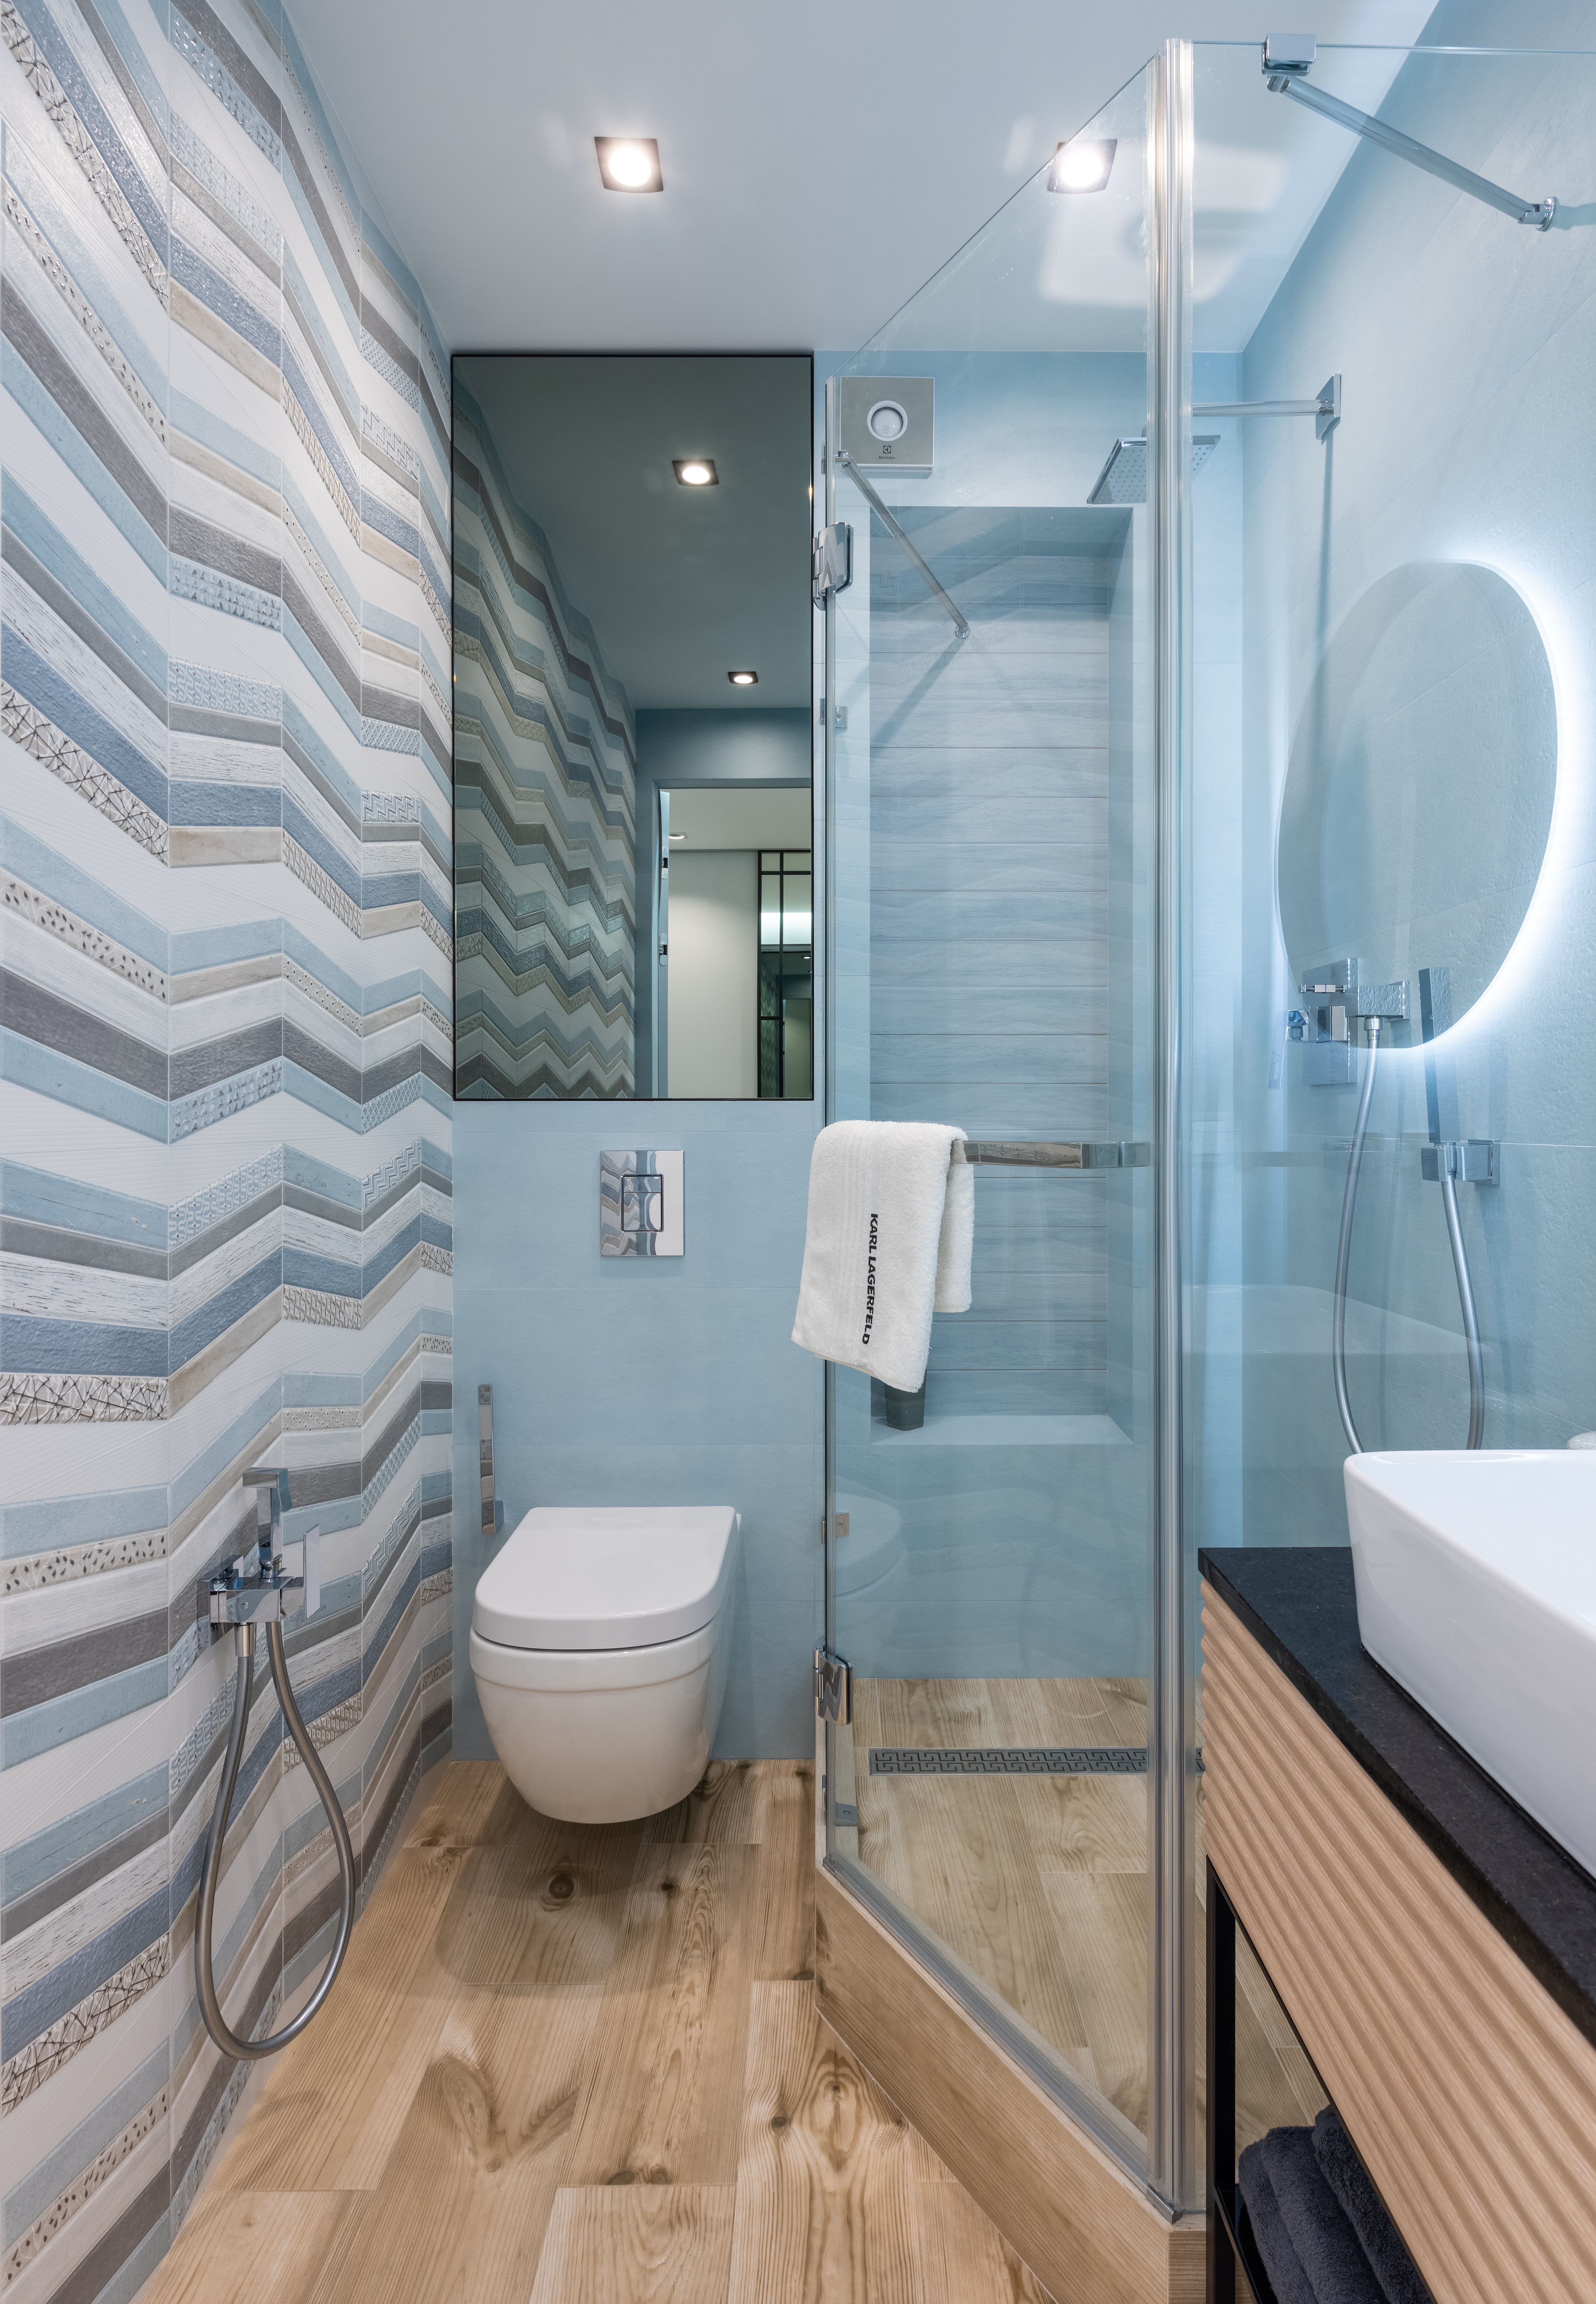 Глянцевый потолок в узкой ванной комнате визуально увеличивает пространство, свою лепту вносит и прямоугольное вертикальное зеркало.